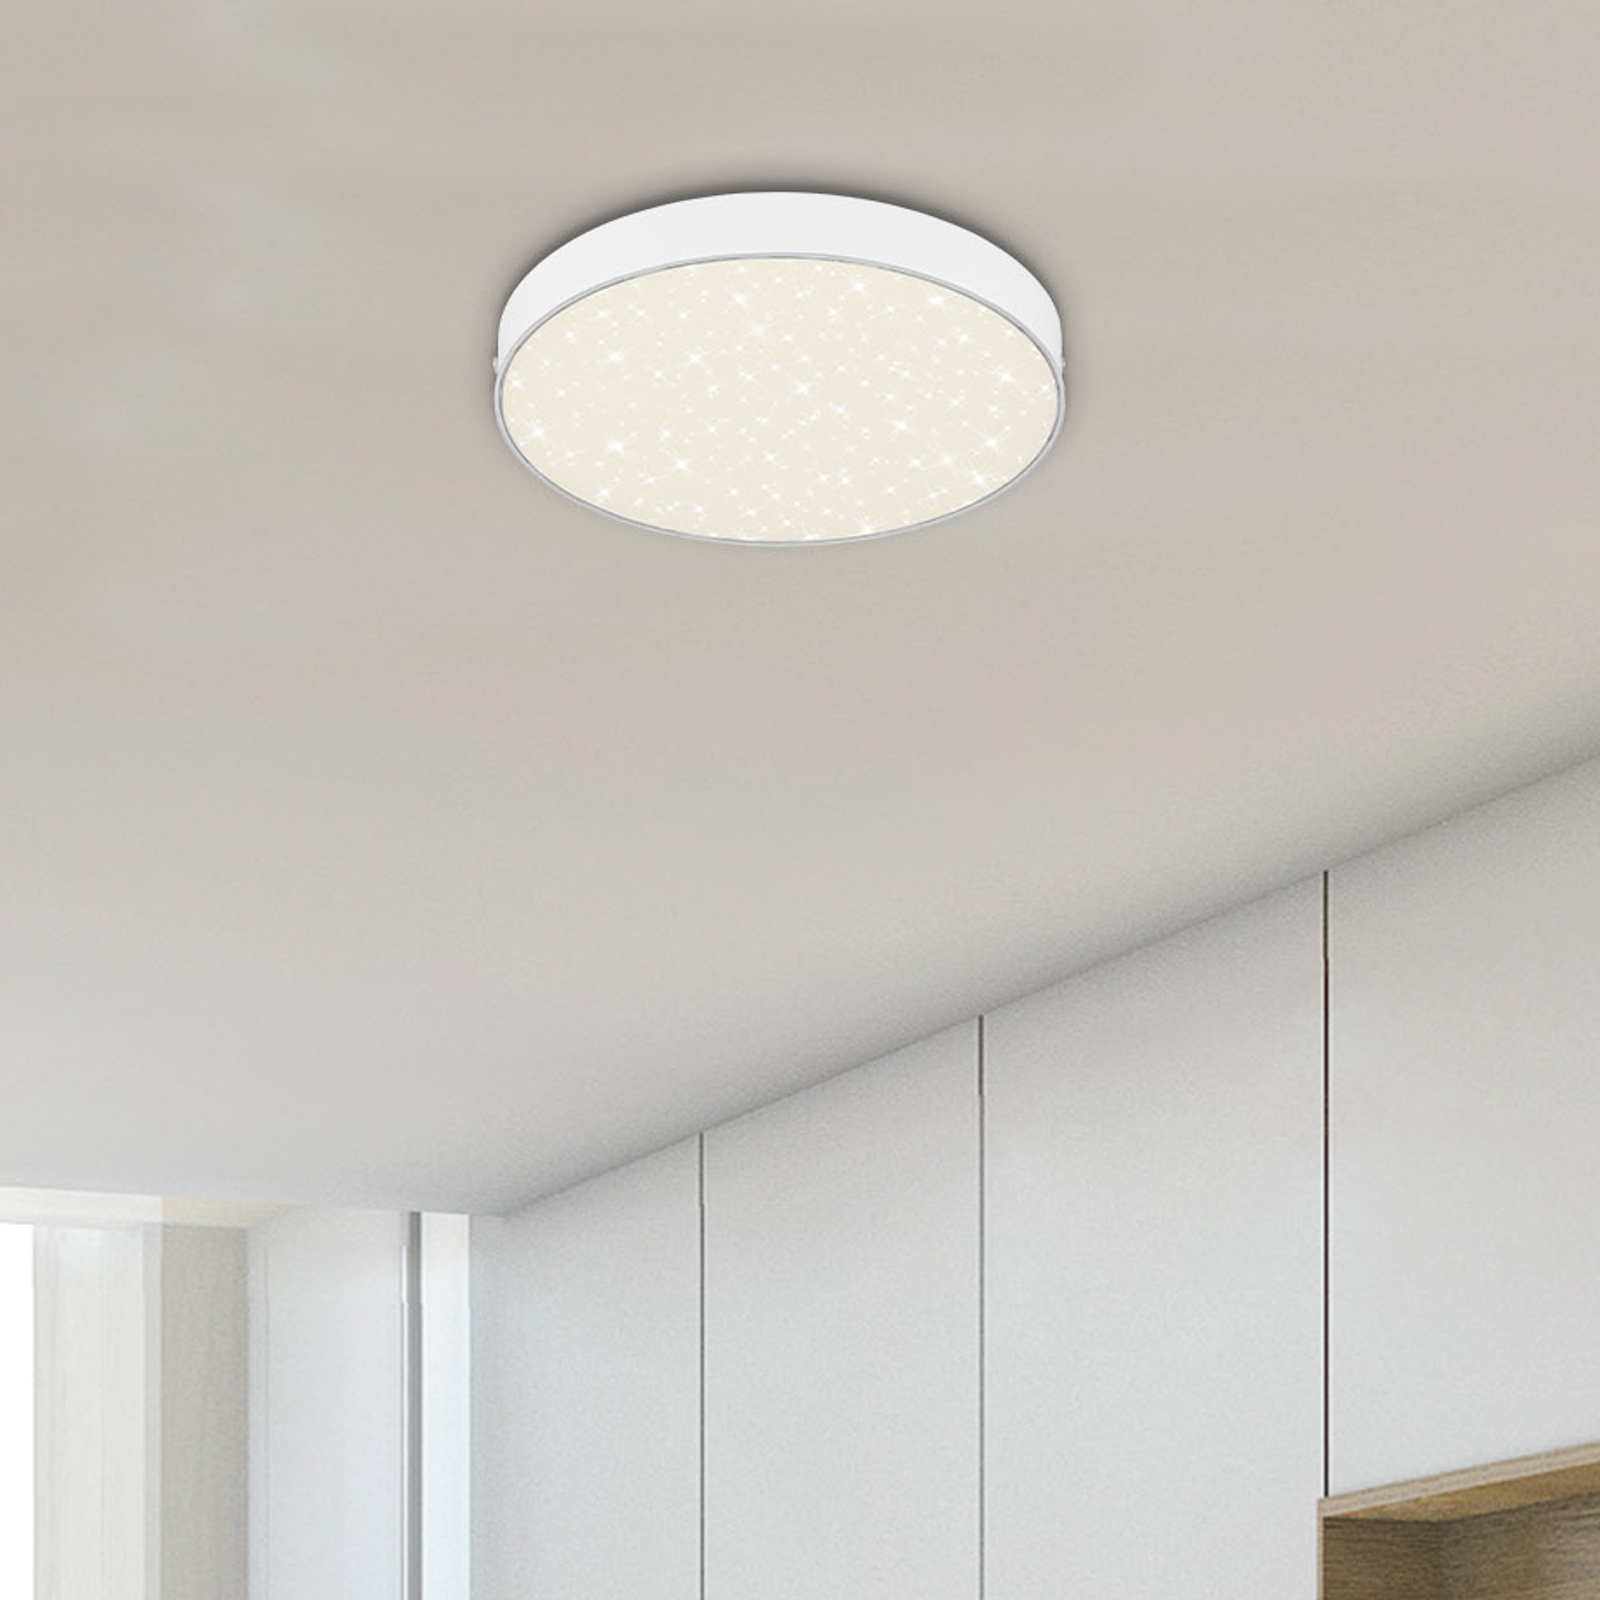 Flame Star LED ceiling light, Ø 21.2 cm, white